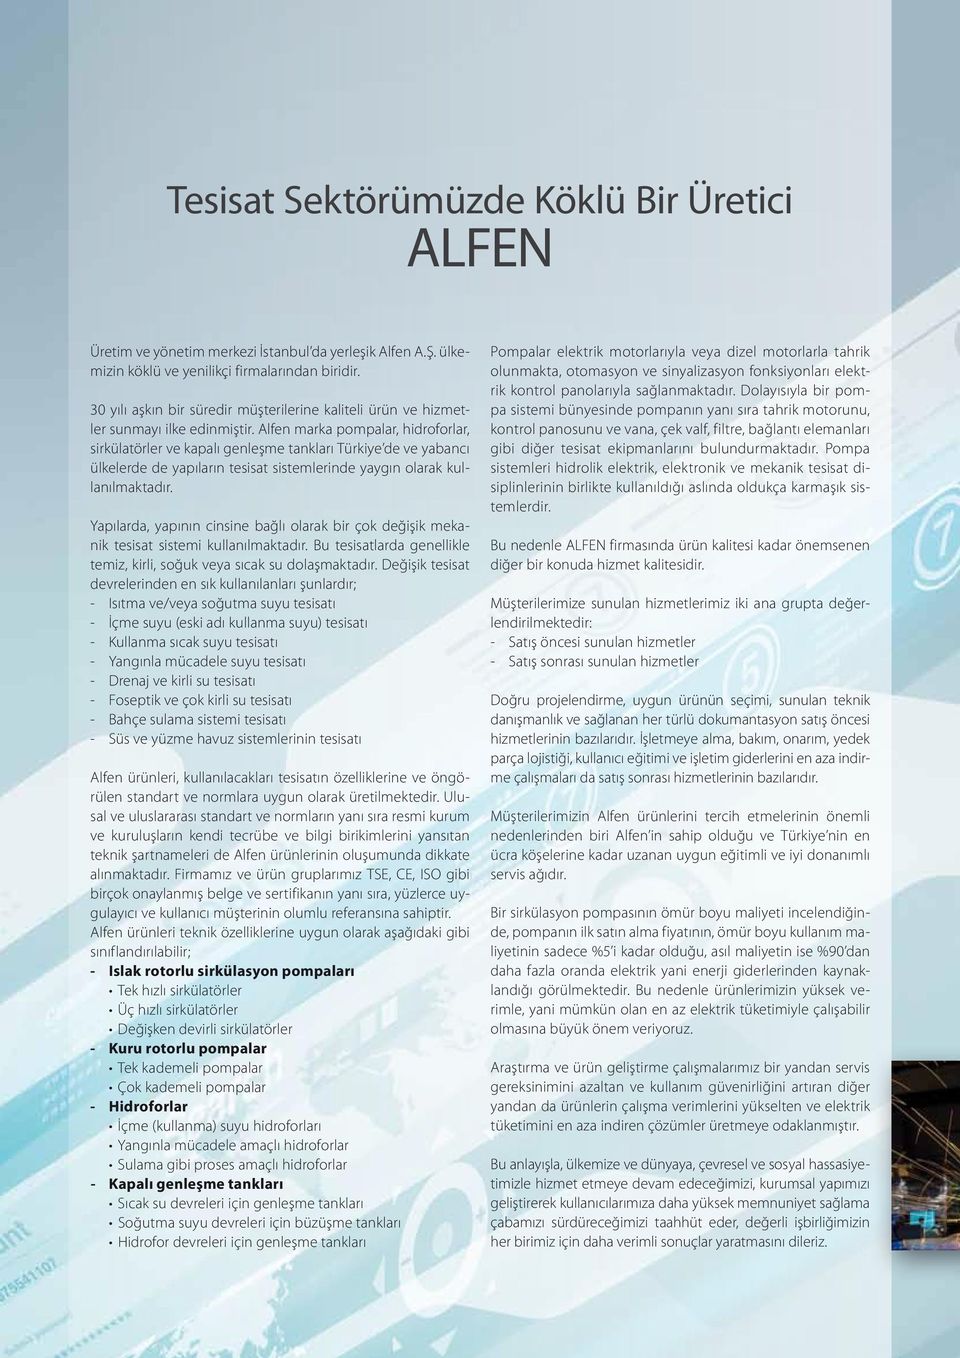 Alfen marka pompalar, hidroforlar, sirkülatörler ve kapalı genleşme tankları Türkiye de ve yabancı ülkelerde de yapıların tesisat sistemlerinde yaygın olarak kullanılmaktadır.